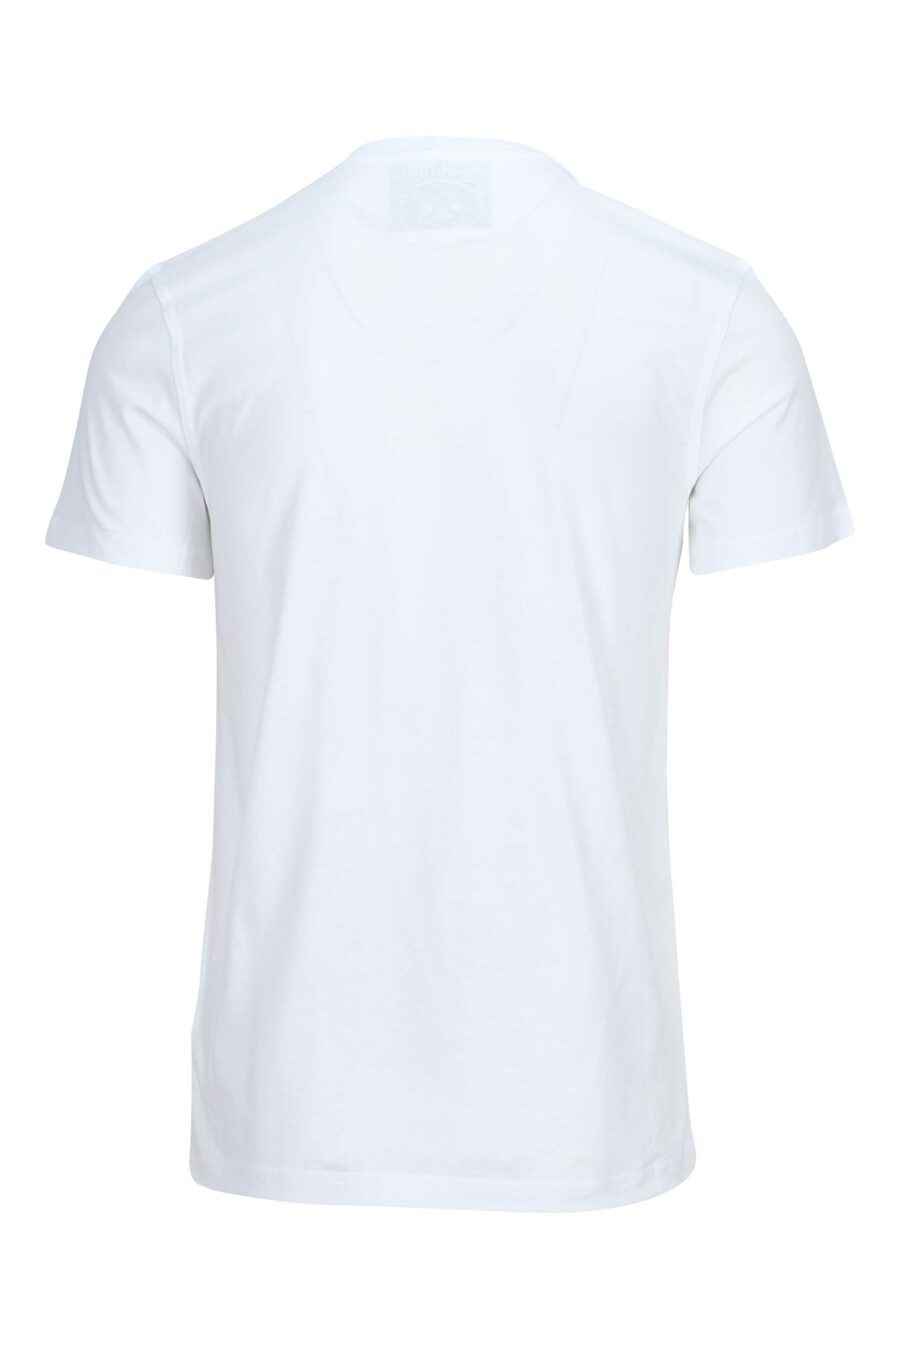 T-shirt branca de algodão orgânico com maxilogo "teddy" - 889316854503 1